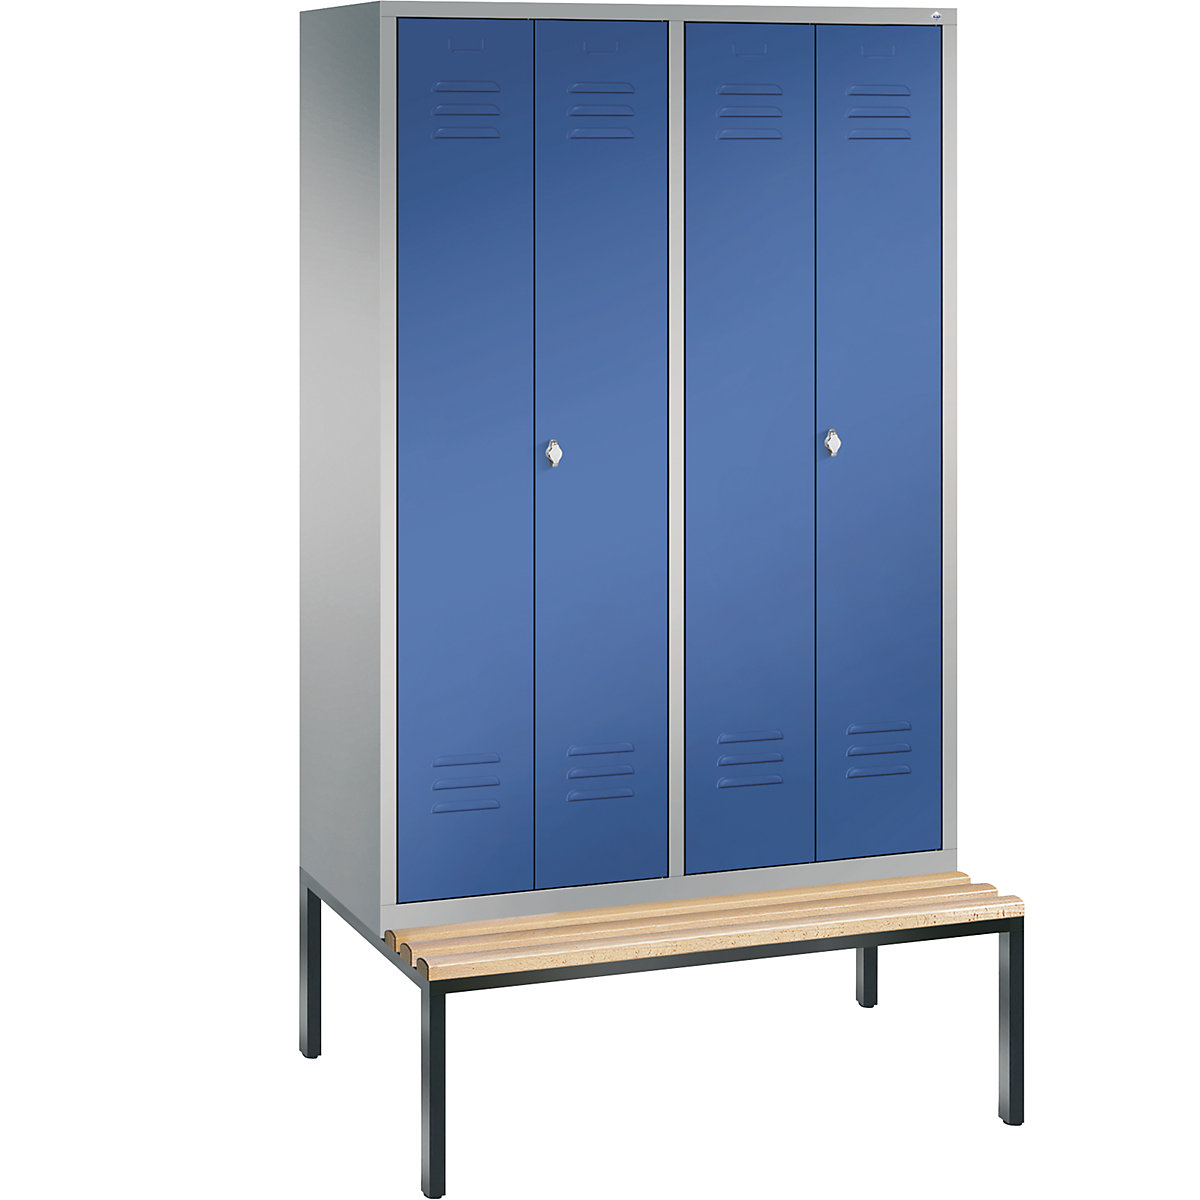 C+P – Garderobni ormar CLASSIC s klupom za sjedenje ugrađenom na donjoj strani, vrata koja se zatvaraju jedna prema drugima, 4 odjela, širina odjela 300 mm, u aluminij bijeloj / encijan plavoj boji